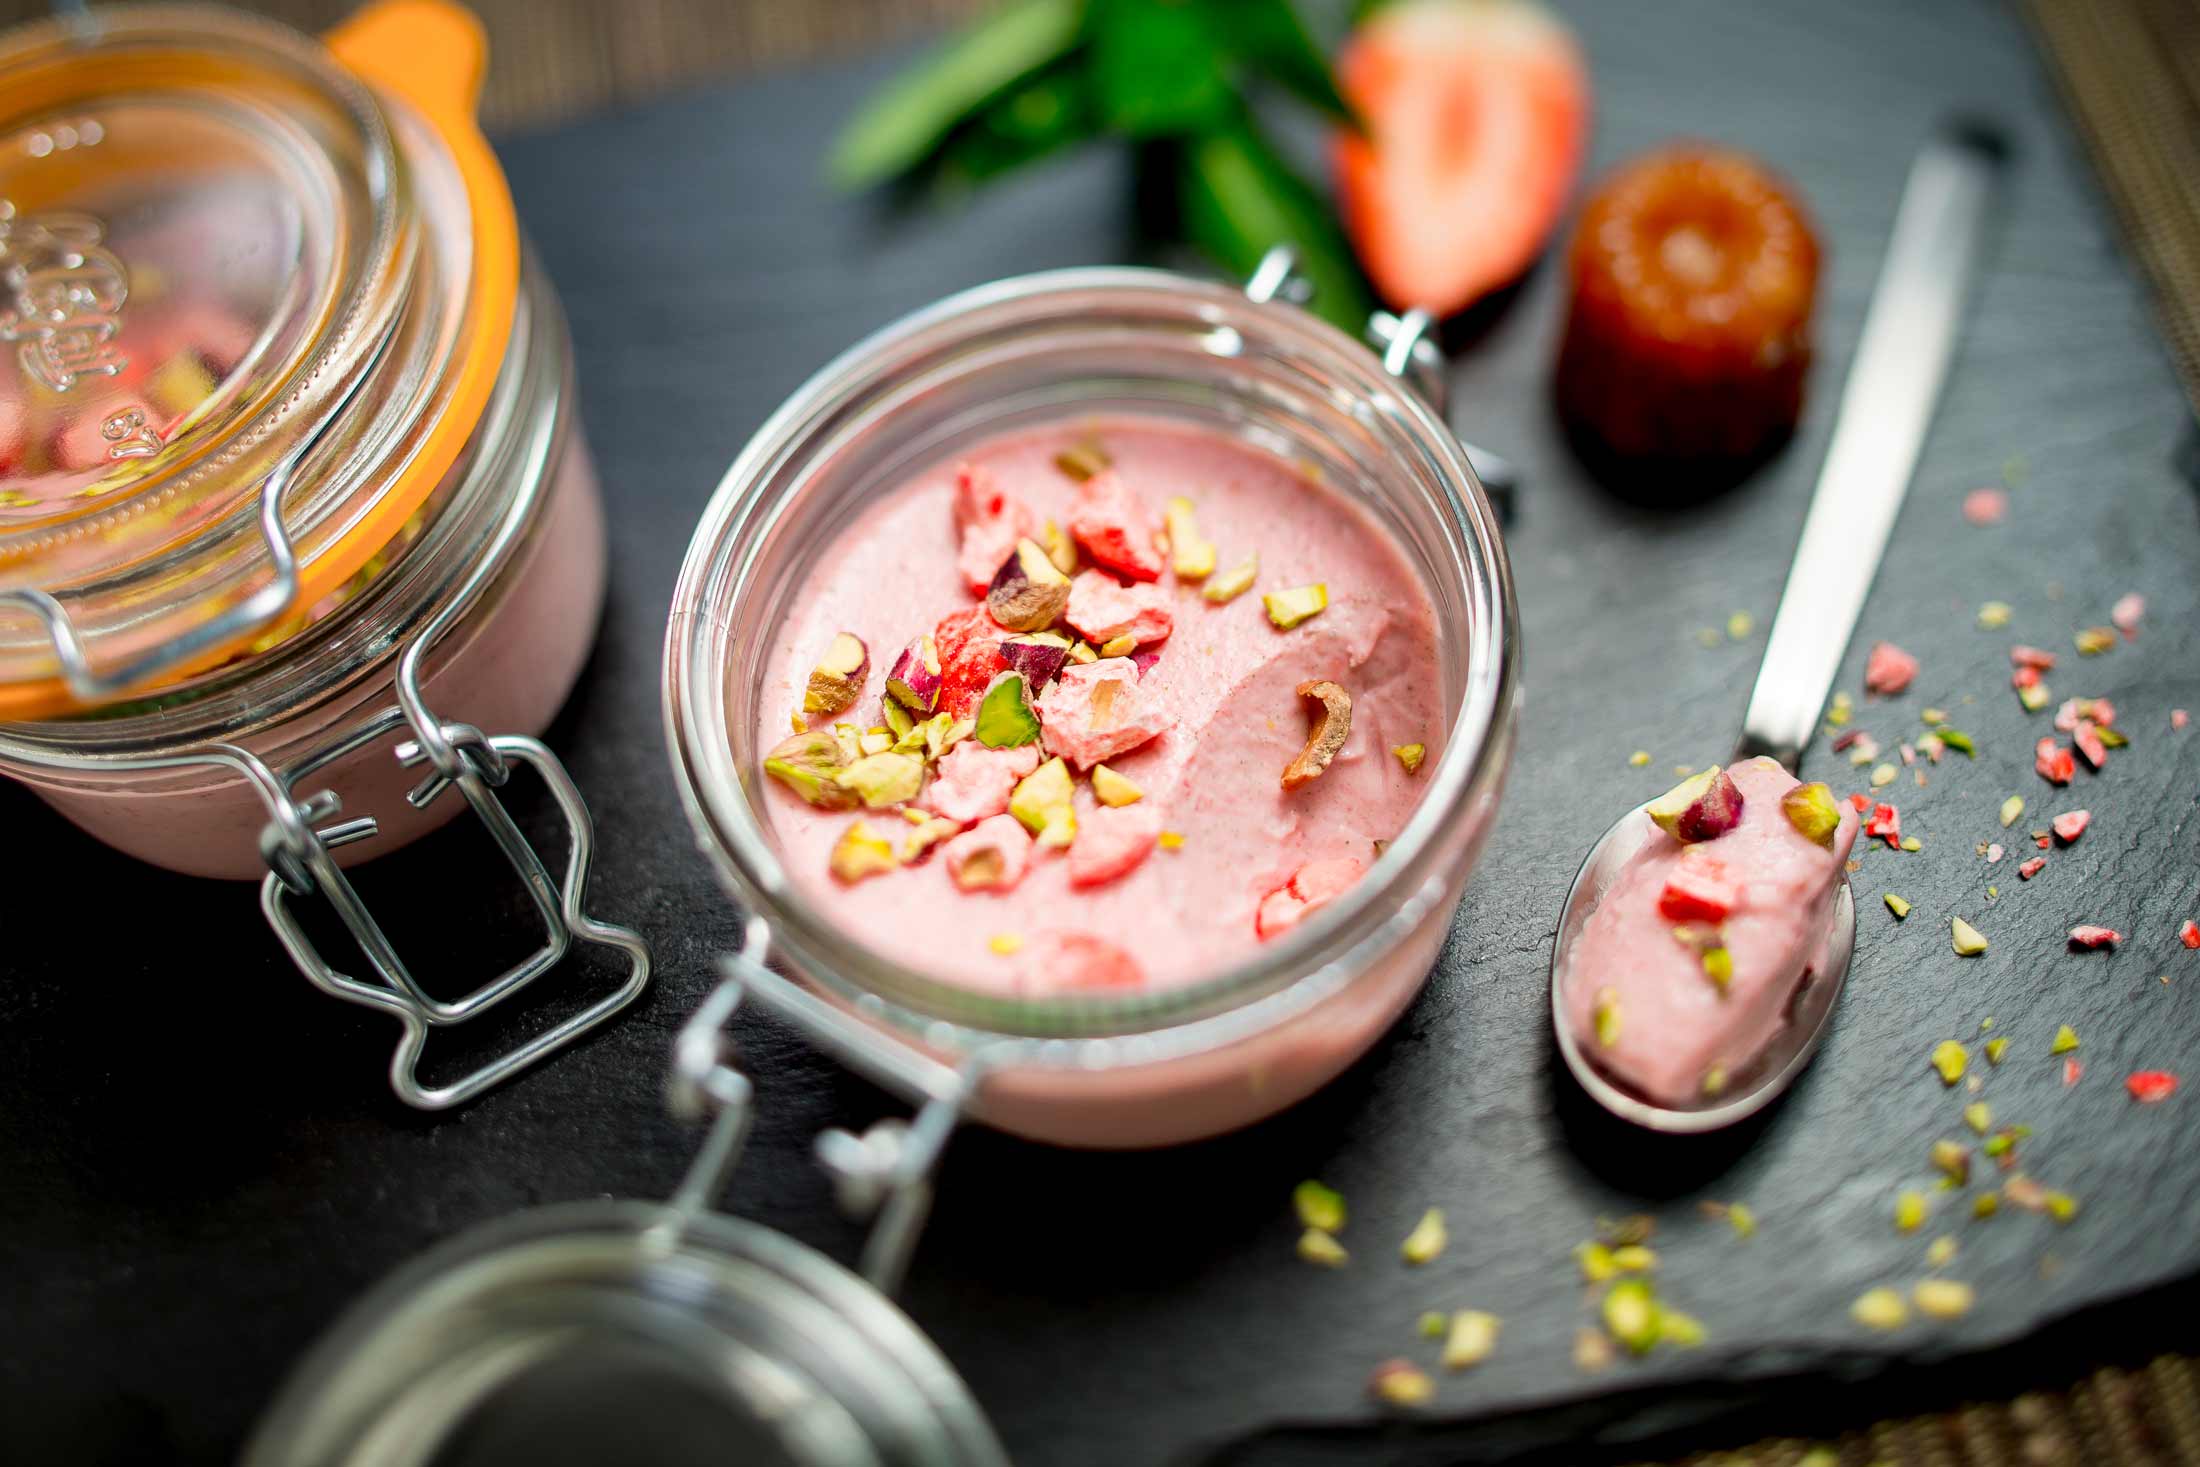 Creme fraise verveine - Visuel culinaire réalisé en studio photo professionnel à Strasbourg dans le Bas-Rhin en Alsace